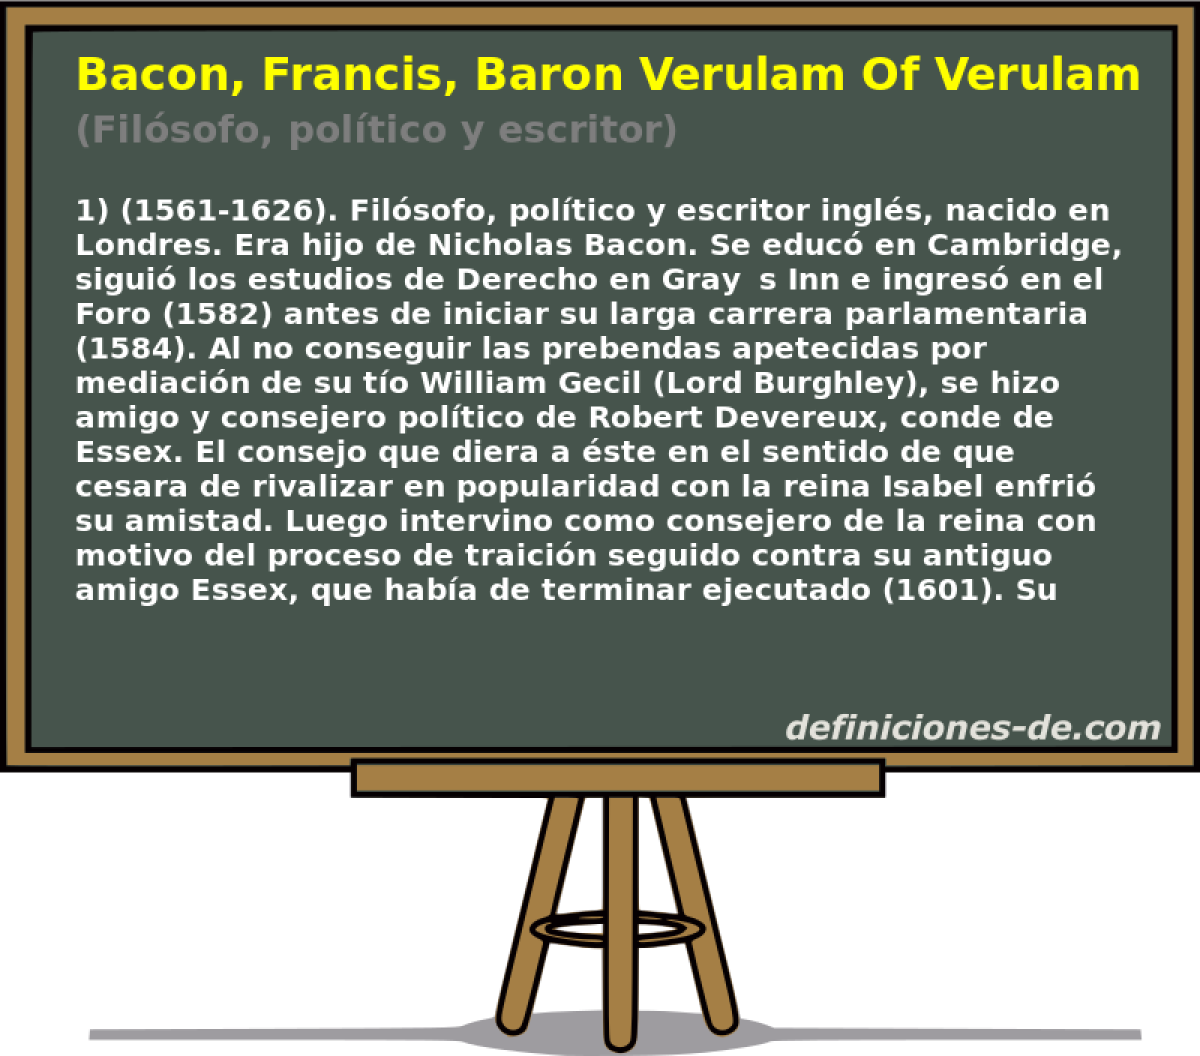 Bacon, Francis, Baron Verulam Of Verulam (Filsofo, poltico y escritor)